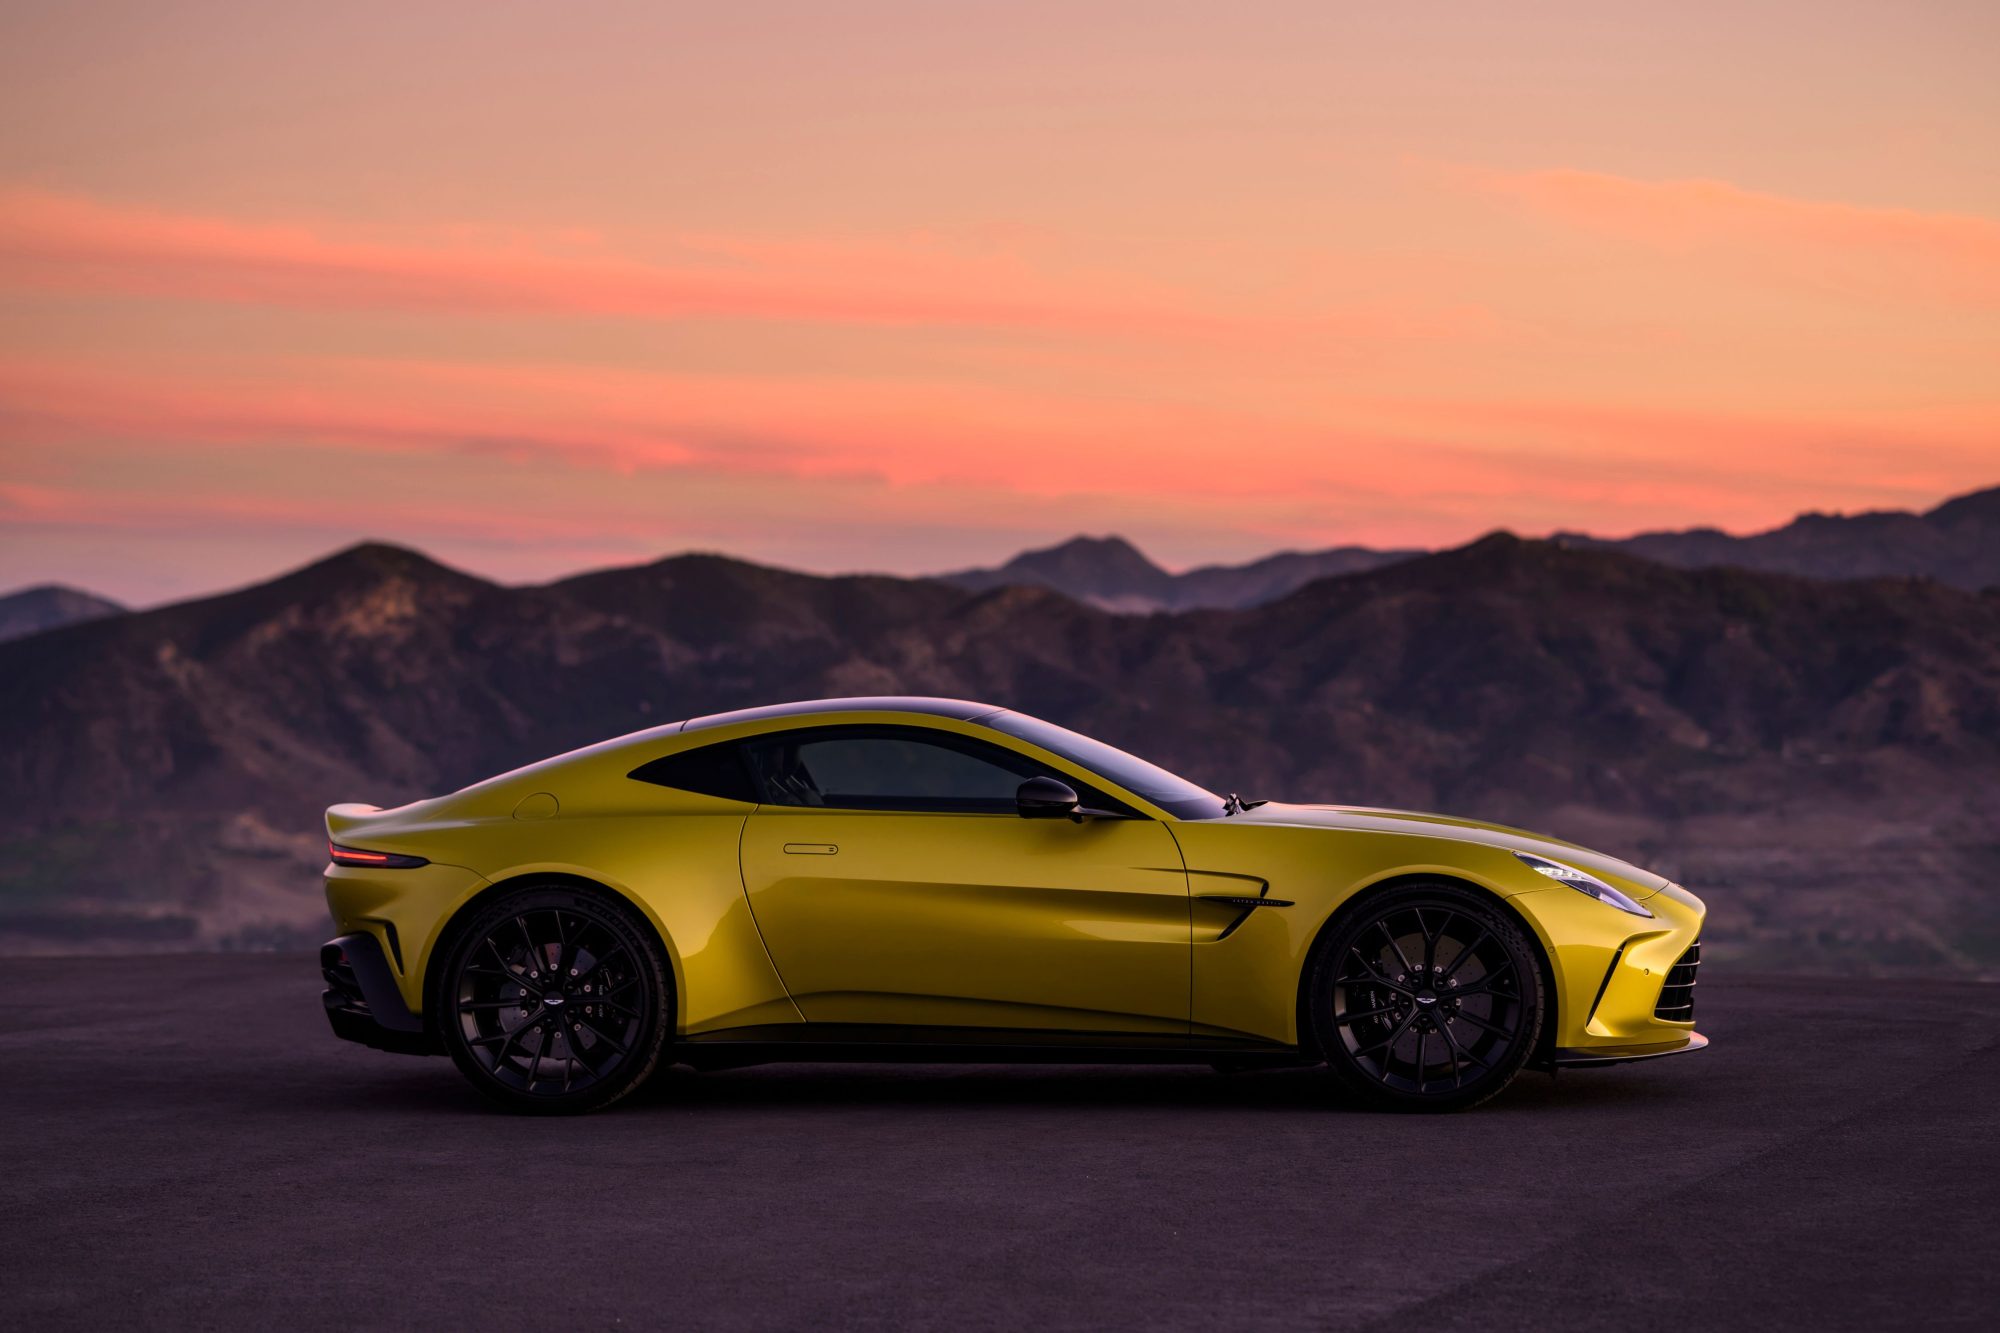 Aston Martin unveils a new Vantage road car